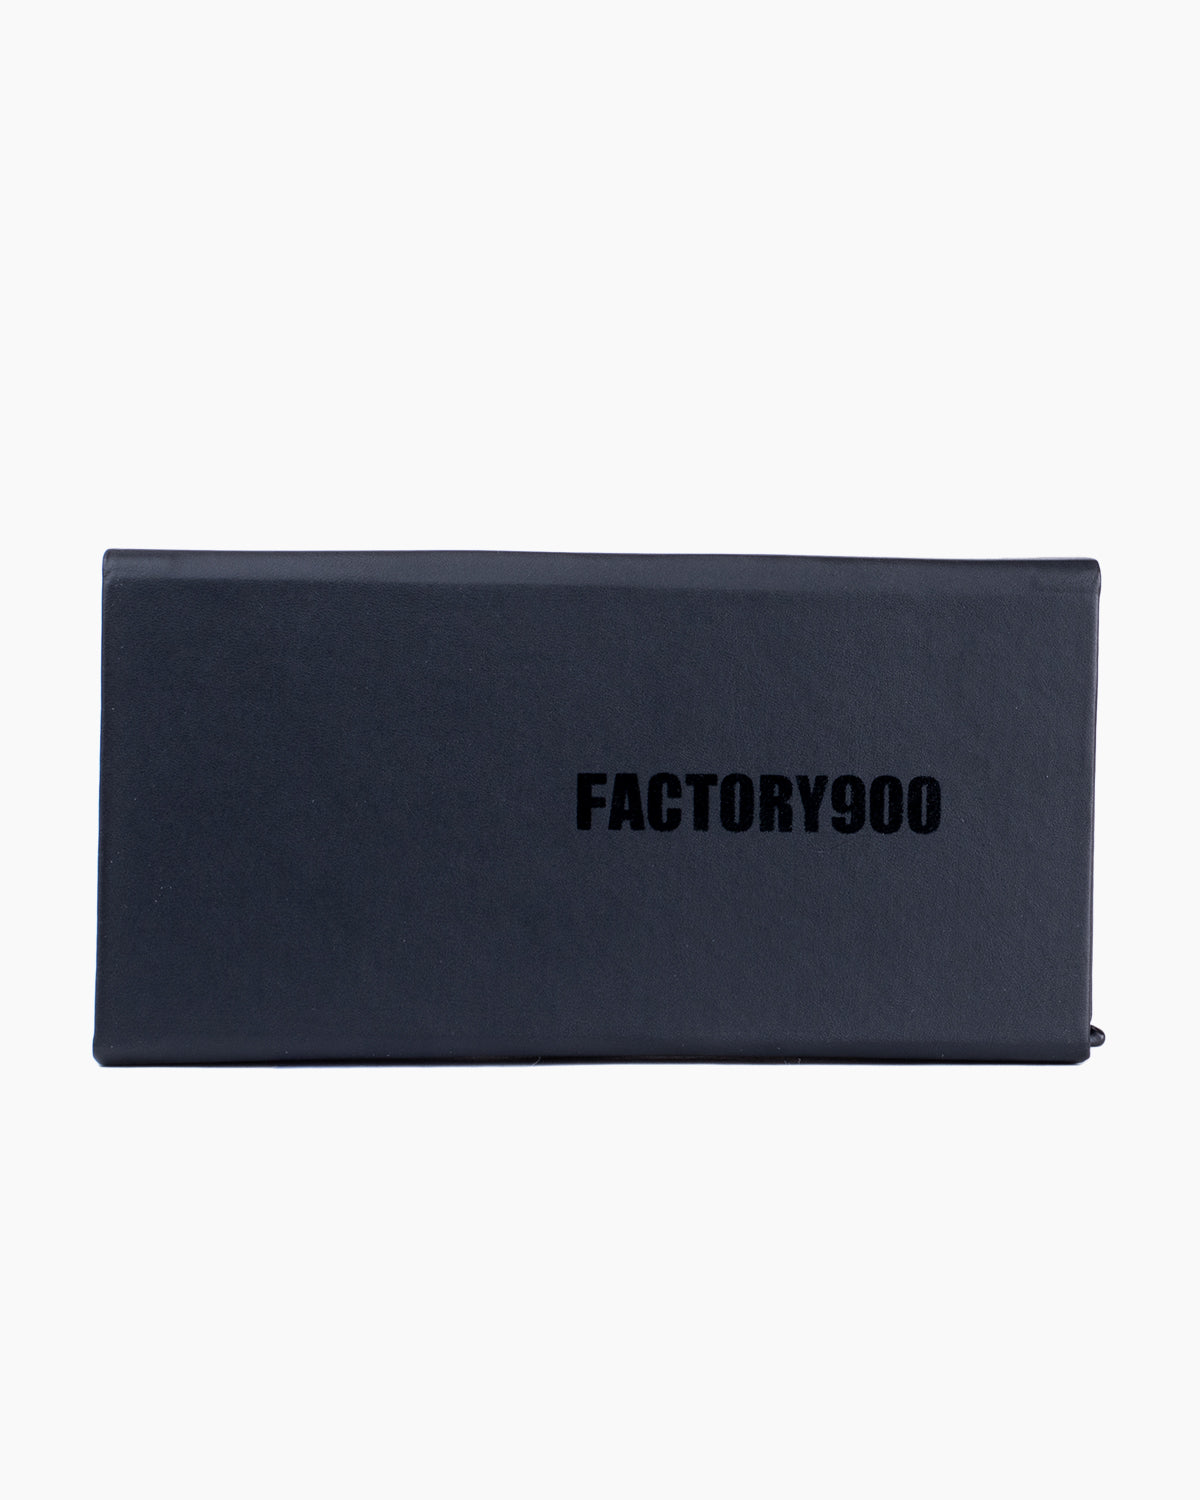 Factory 900 - MF002 - 01 | glasses bar